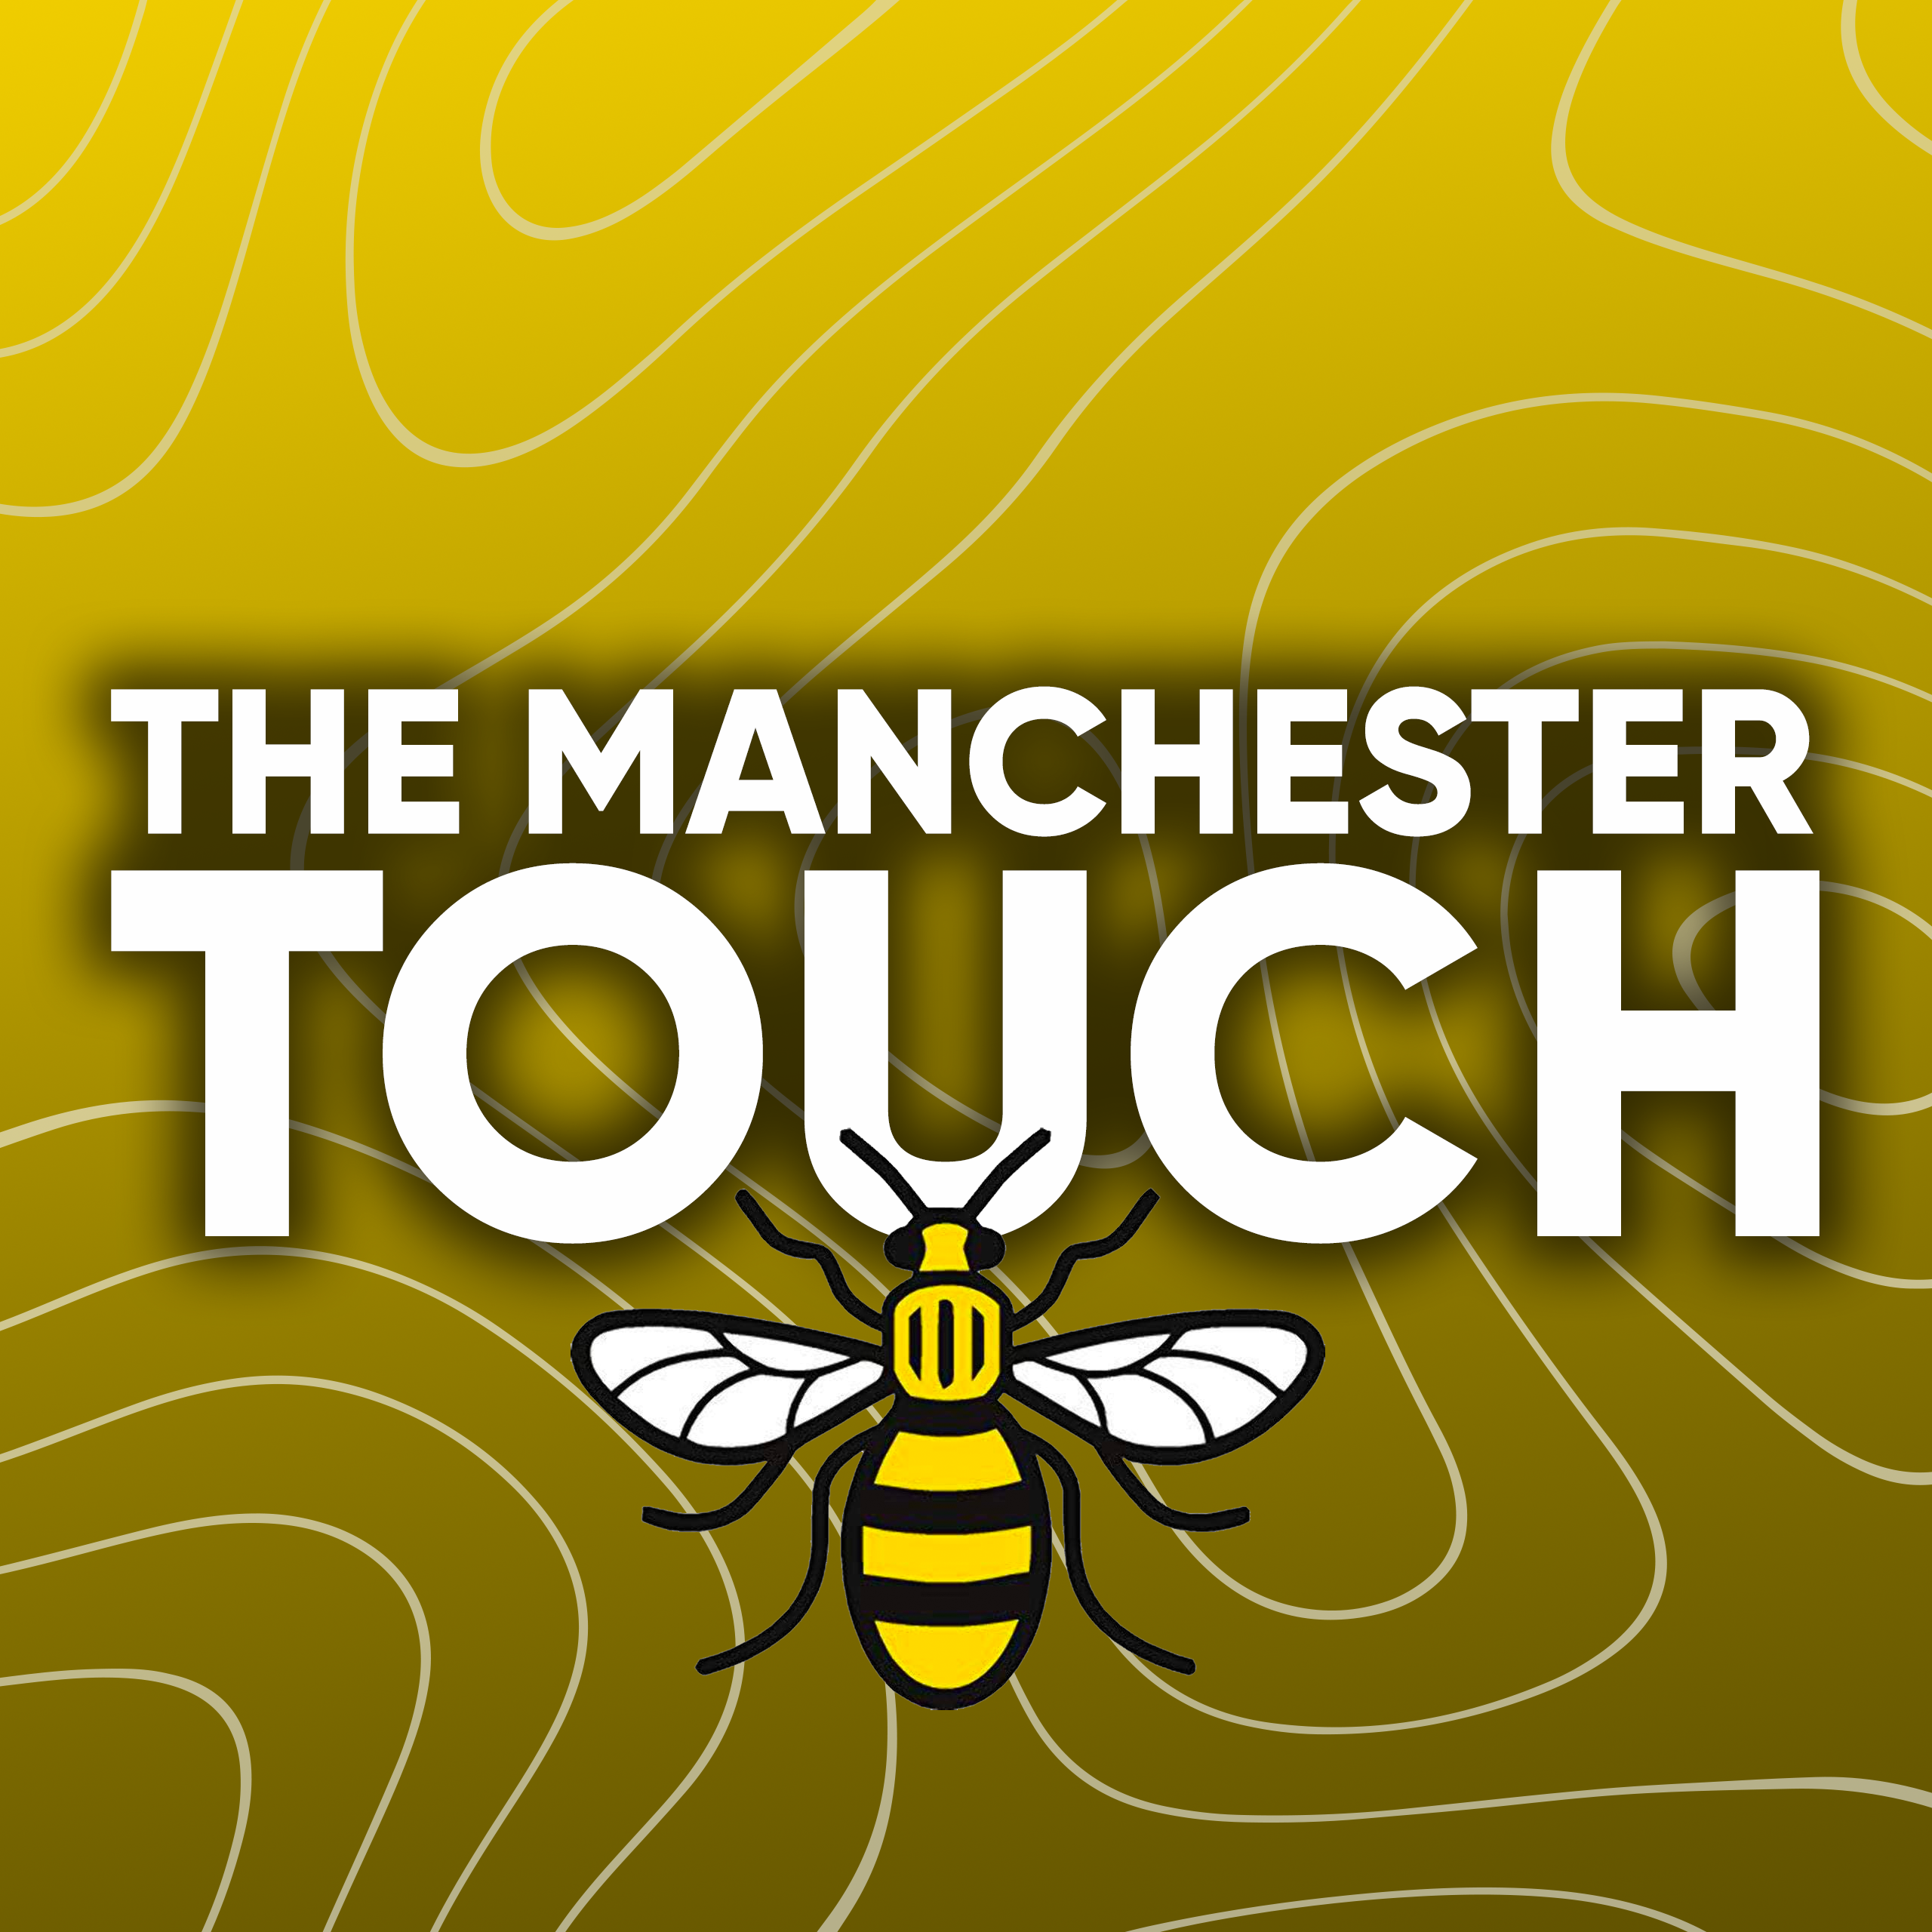 Der Manchester-Touch: Premium-E-Liquids vor Ort herstellen